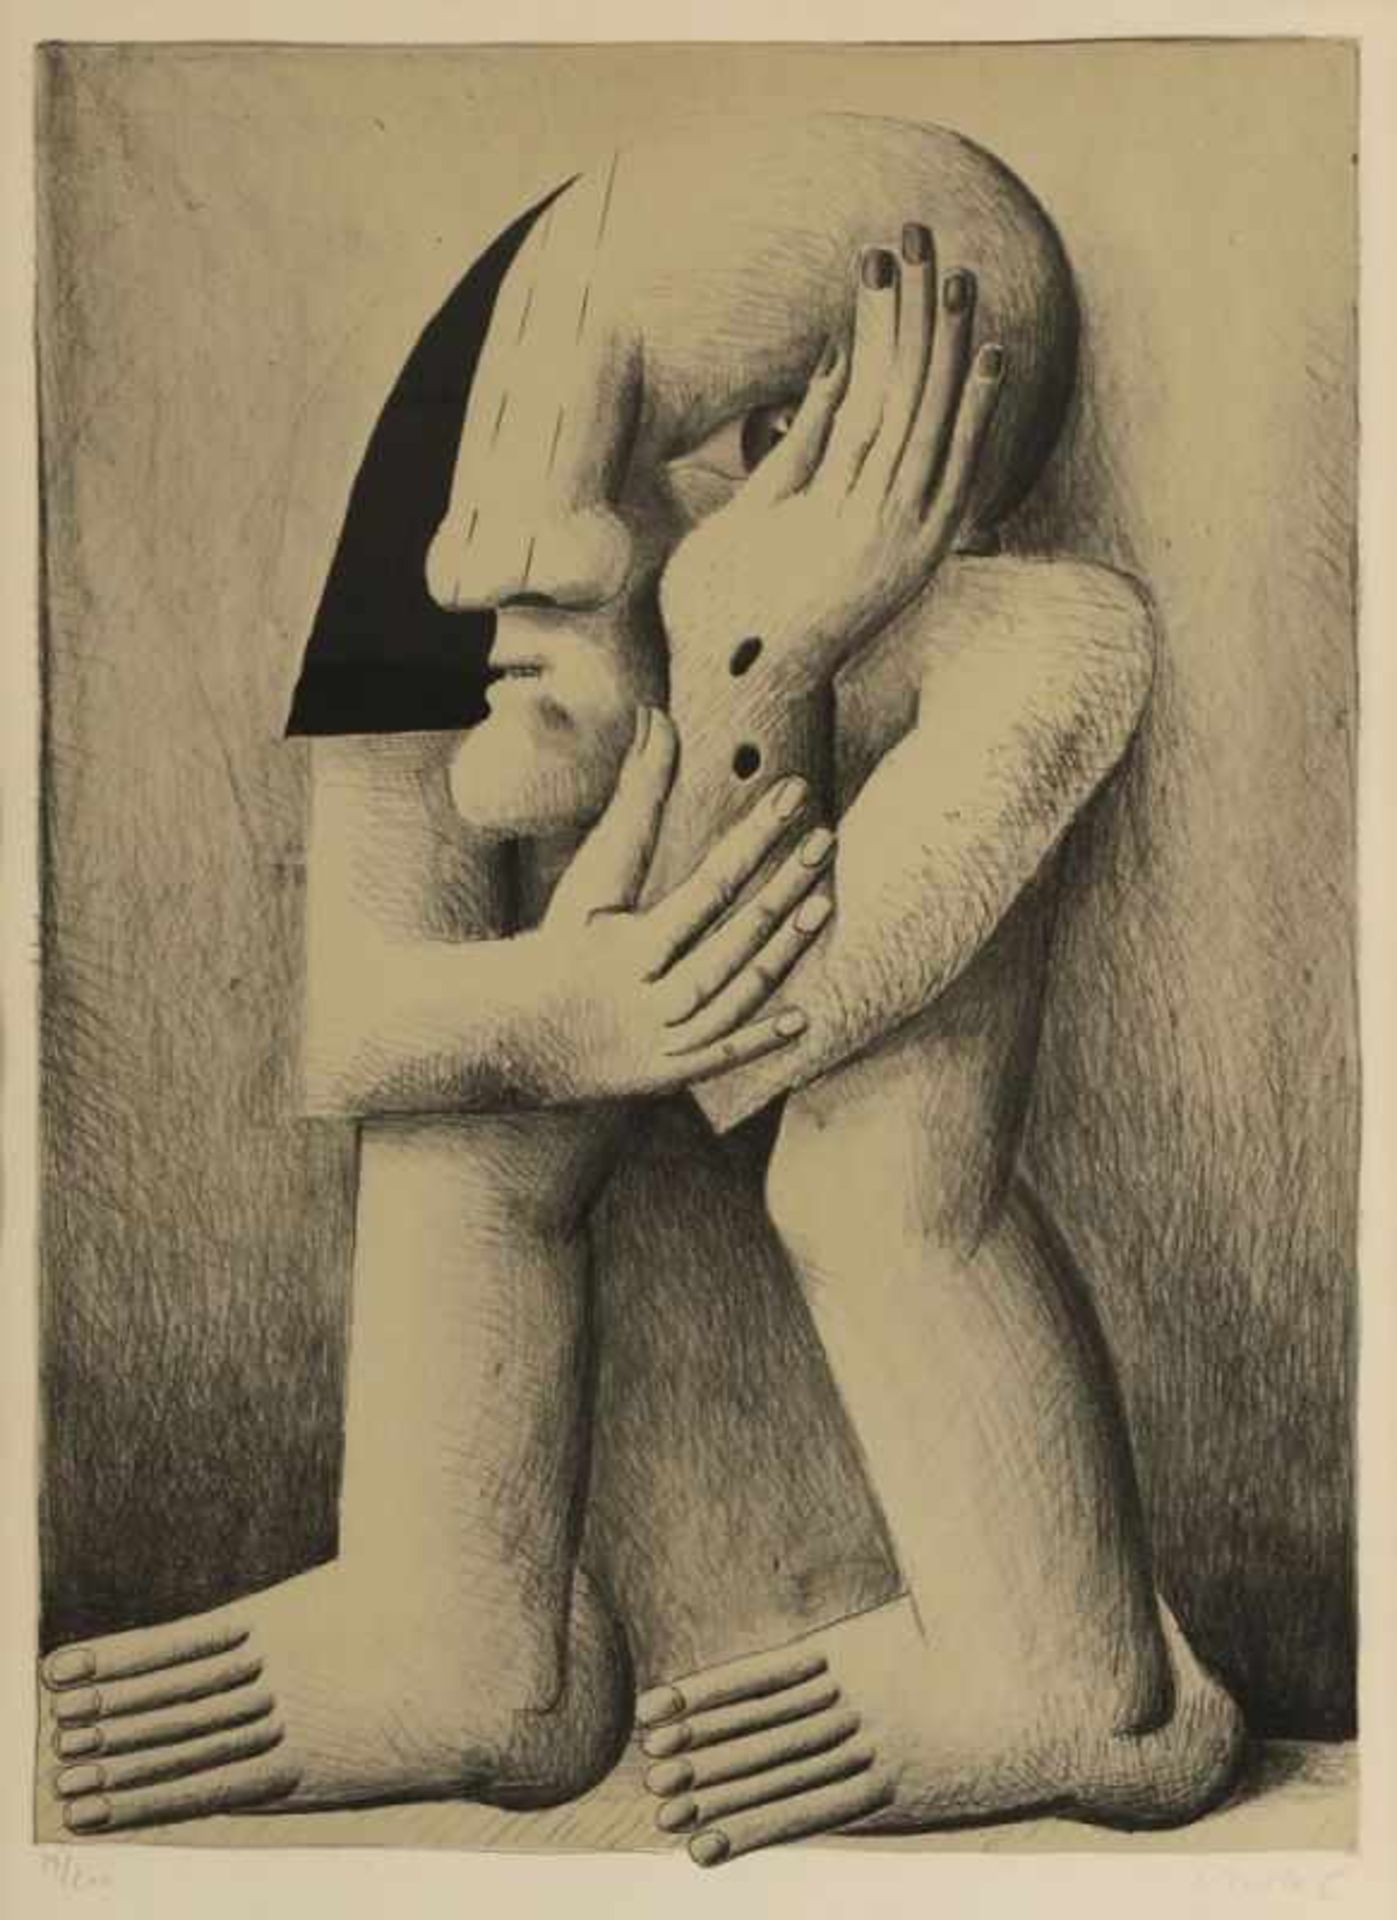 Horst Antes 1936 Heppenheim - "Figur mit zwei Wunden" - Lithografie/Papier. 19/200. 63 x 45,6 cm, 70